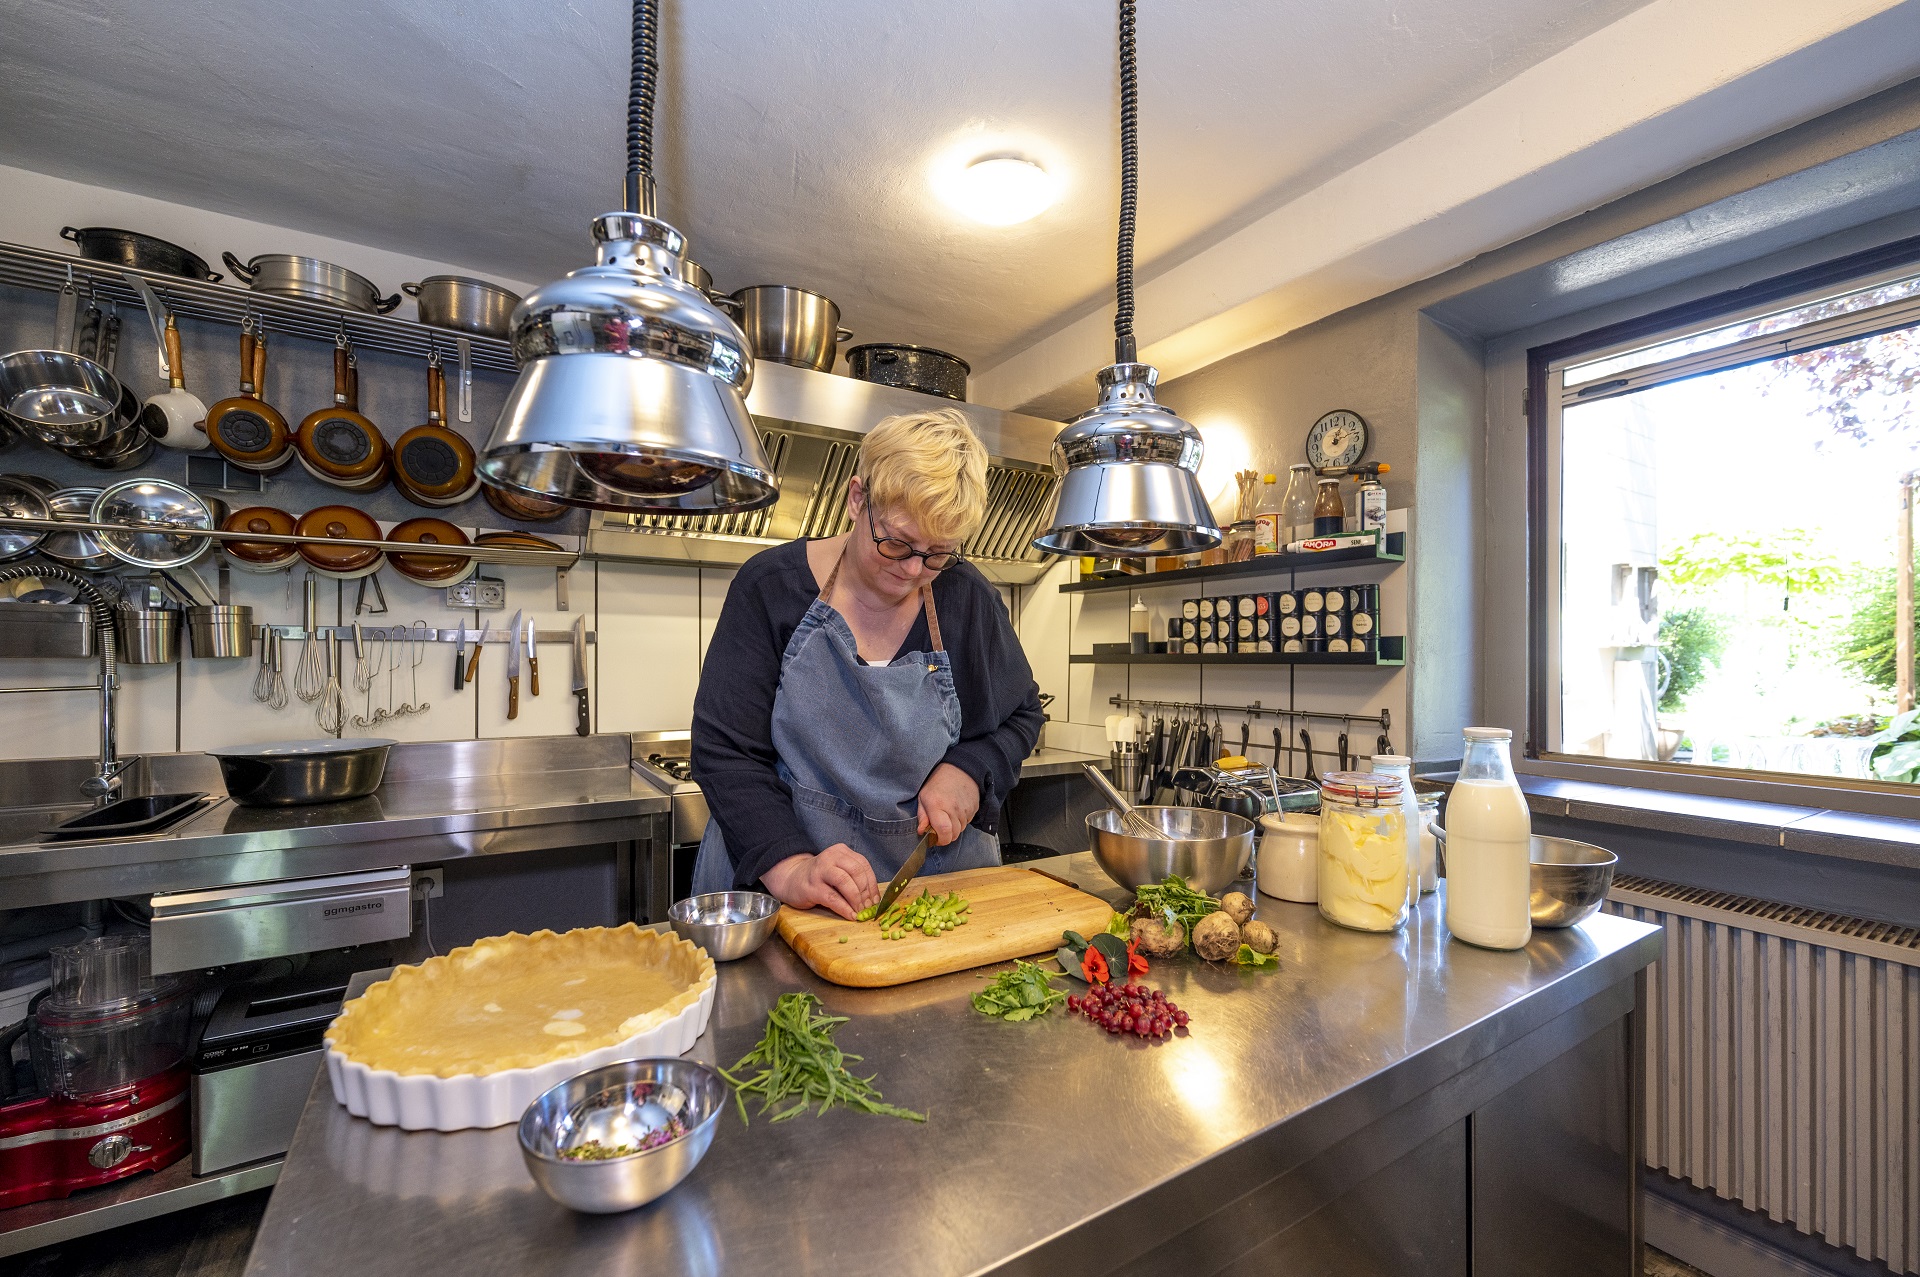 La cuisine de la maison de campagne des Spanier. Anja Faust-Spanier se tient debout devant l'îlot de cuisson en métal et coupe des légumes. Le moule pour la quiche est là et les ingrédients sont étalés sur le buffet. En arrière-plan, vous pouvez voir la cuisine avec des pots et des épices.